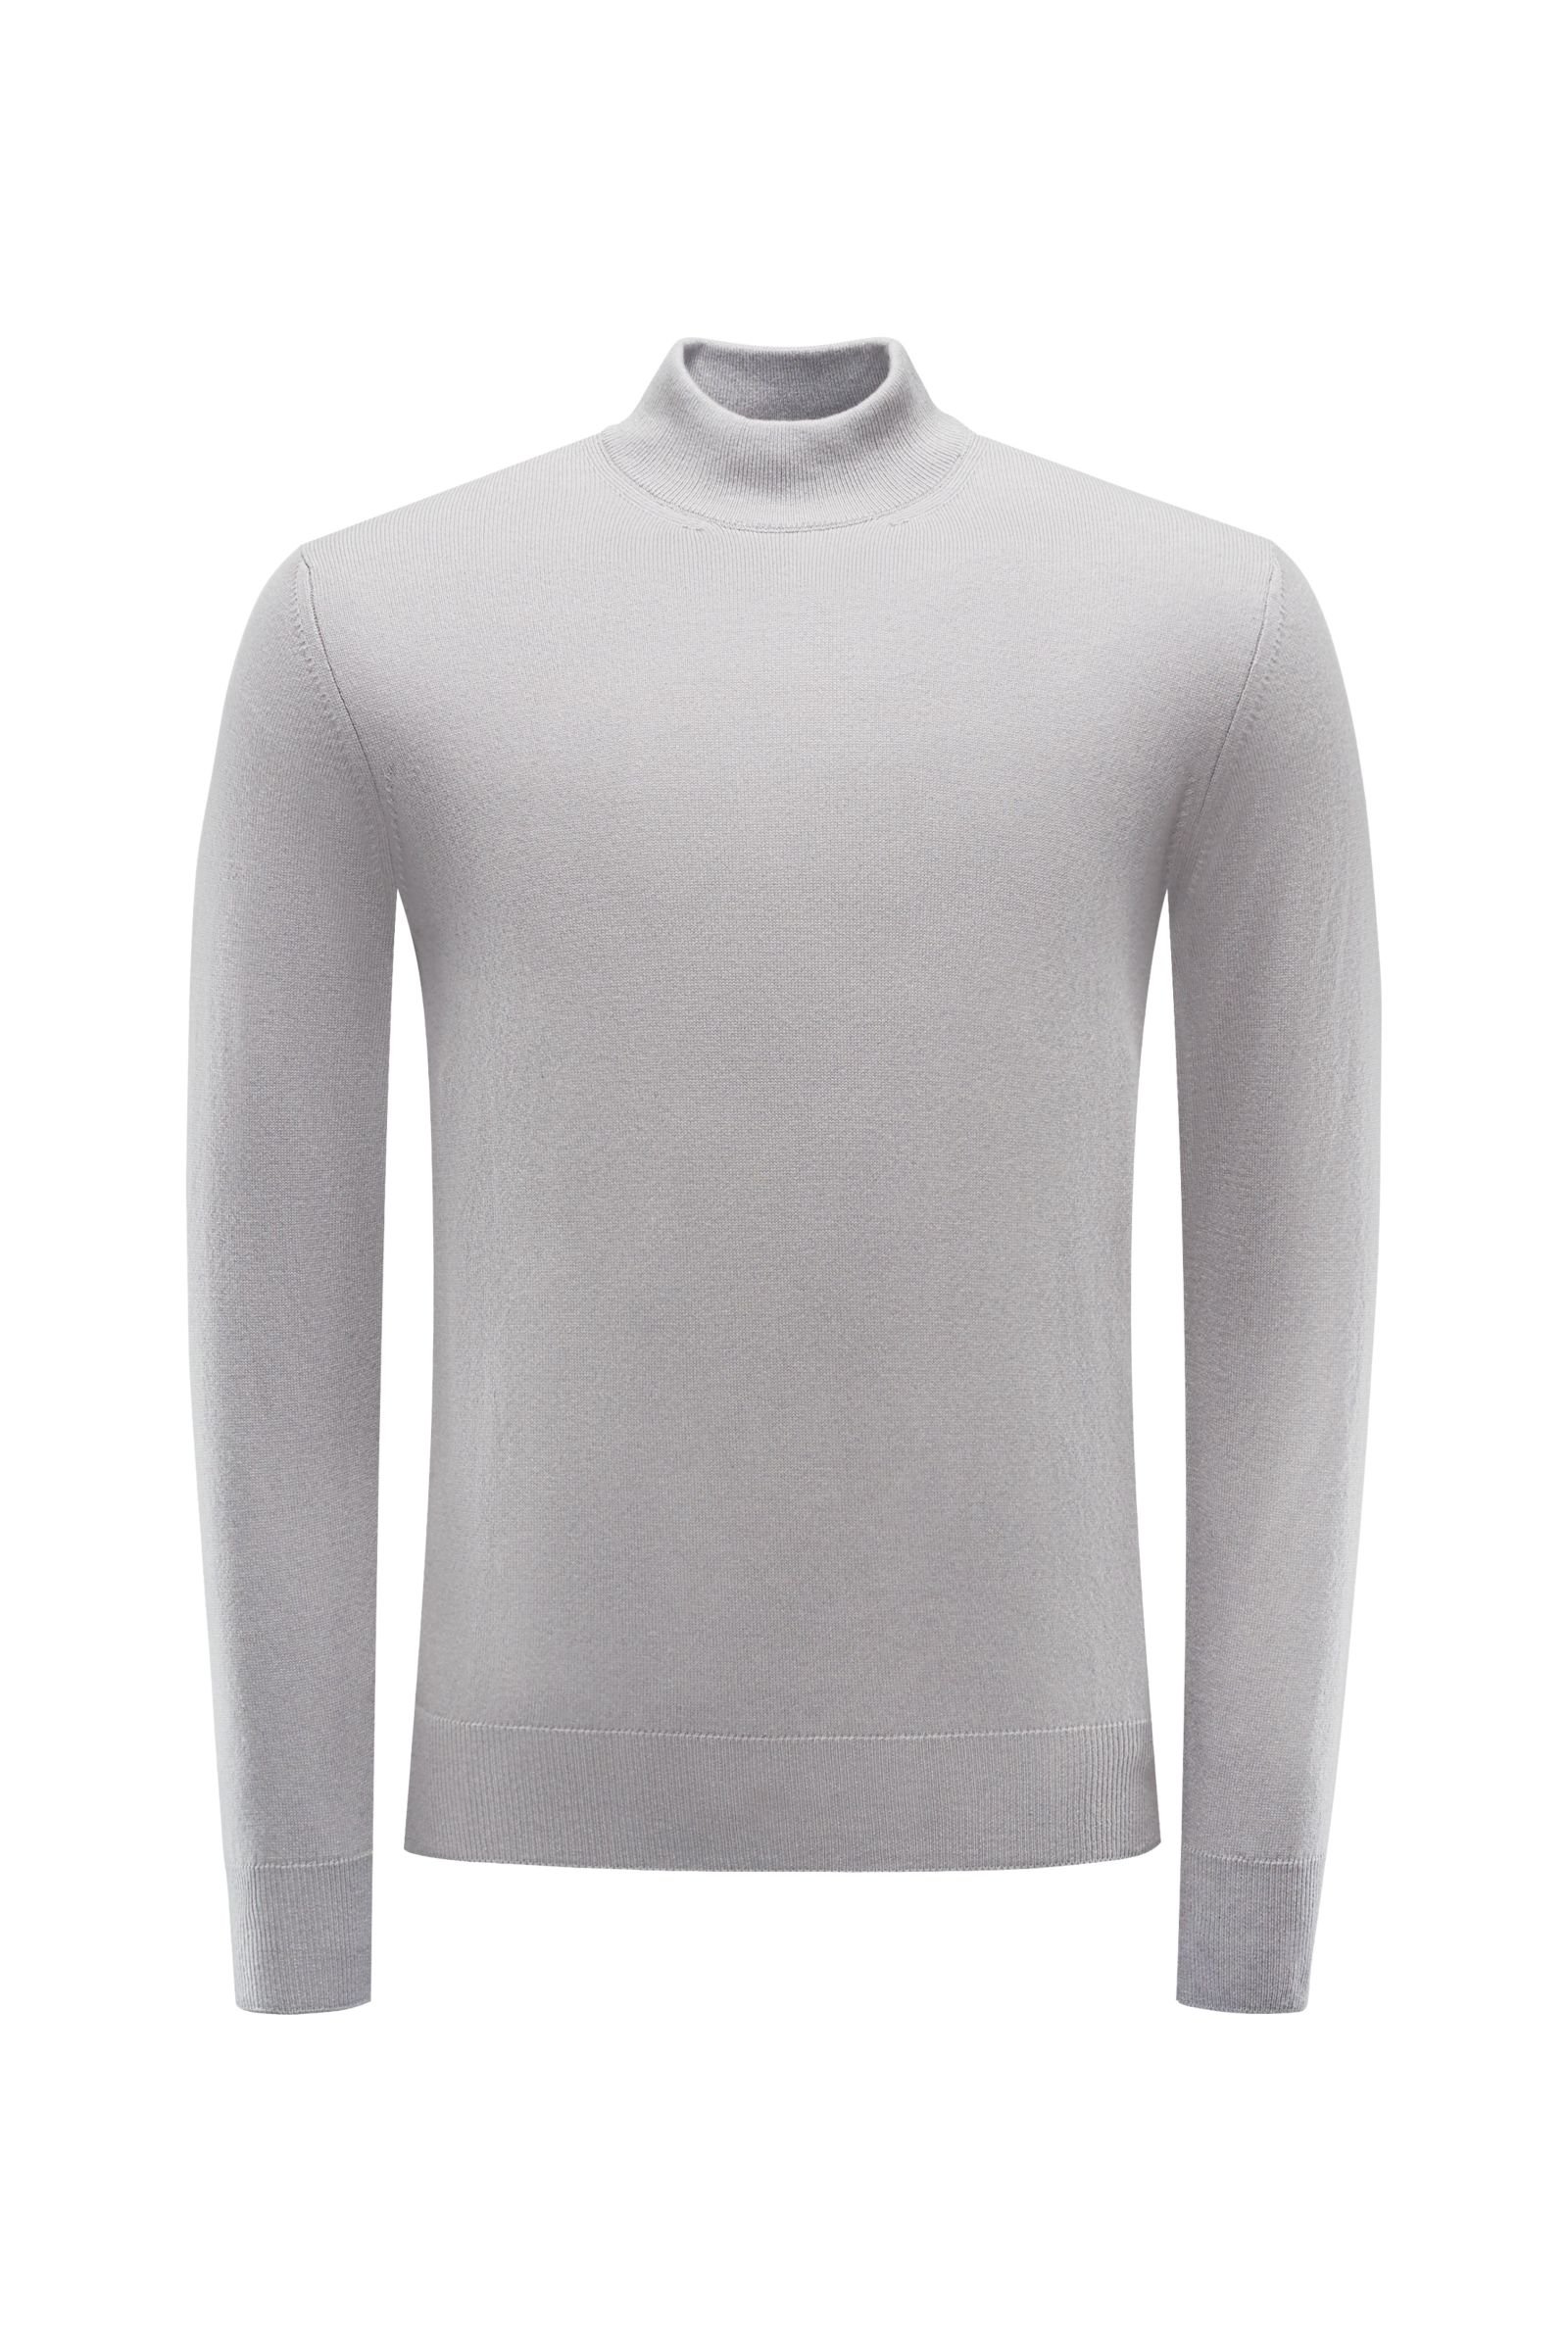 Cashmere jumper light grey